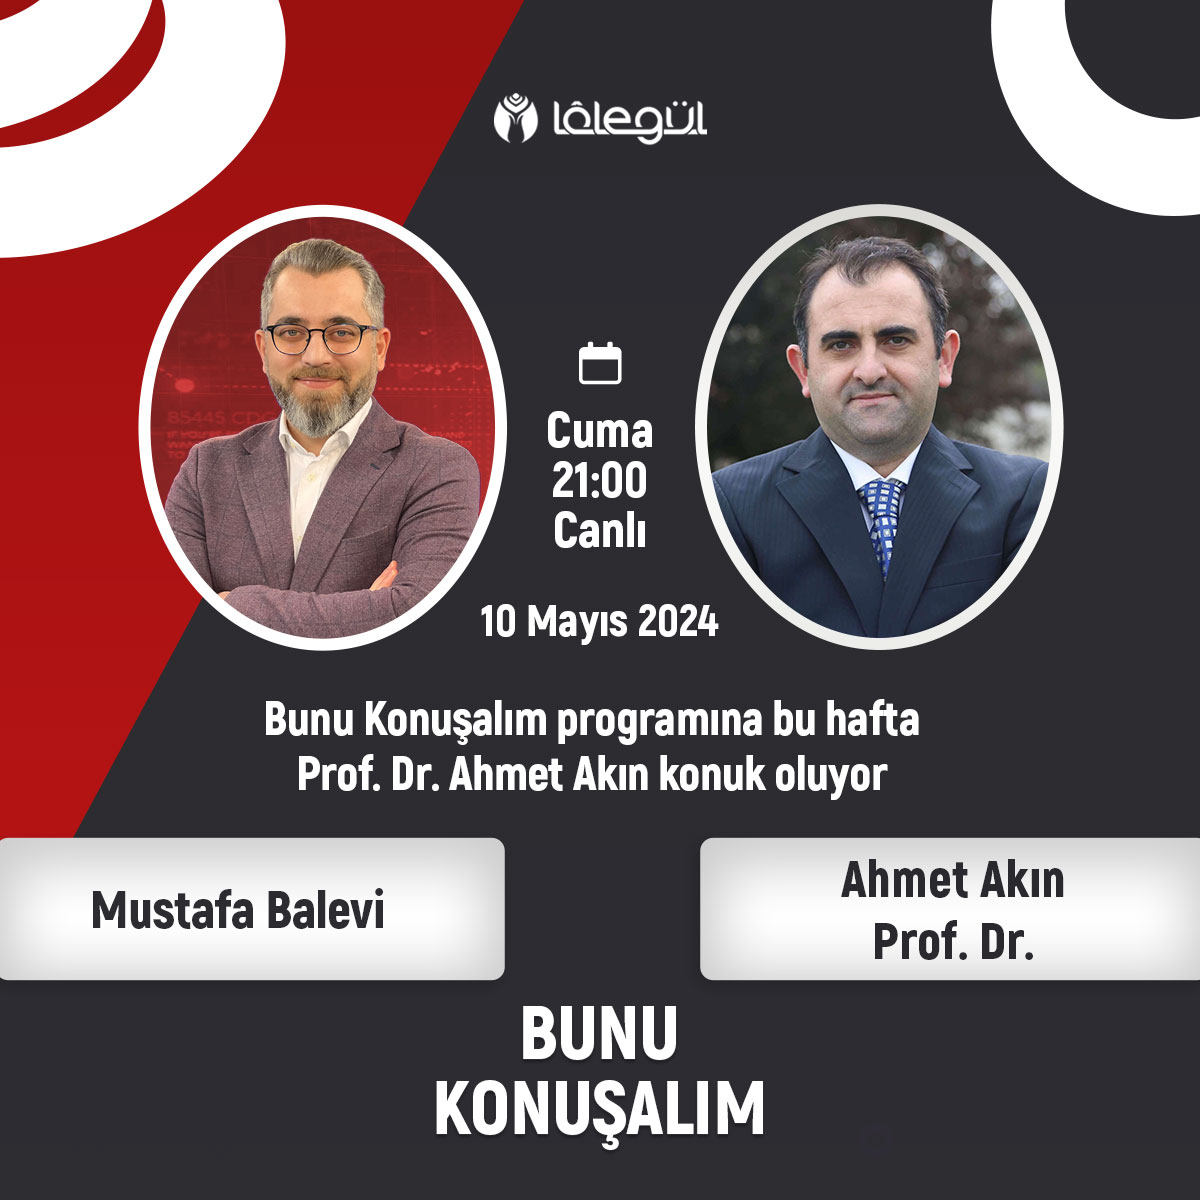 Bunu Konuşalım Programına bu hafta Prof. Dr. Ahmet Akın Konuk Oluyor. Moderetörlüğünü Mustafa Balevi'nin yaptığı 'Bunu Konuşalım' bu akşam canlı olarak saat 21:00'de Lâlegül TV ve Lâlegül FM'de